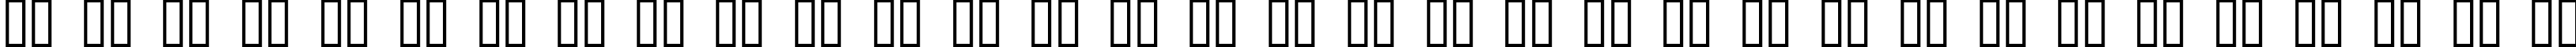 Пример написания русского алфавита шрифтом Bitched